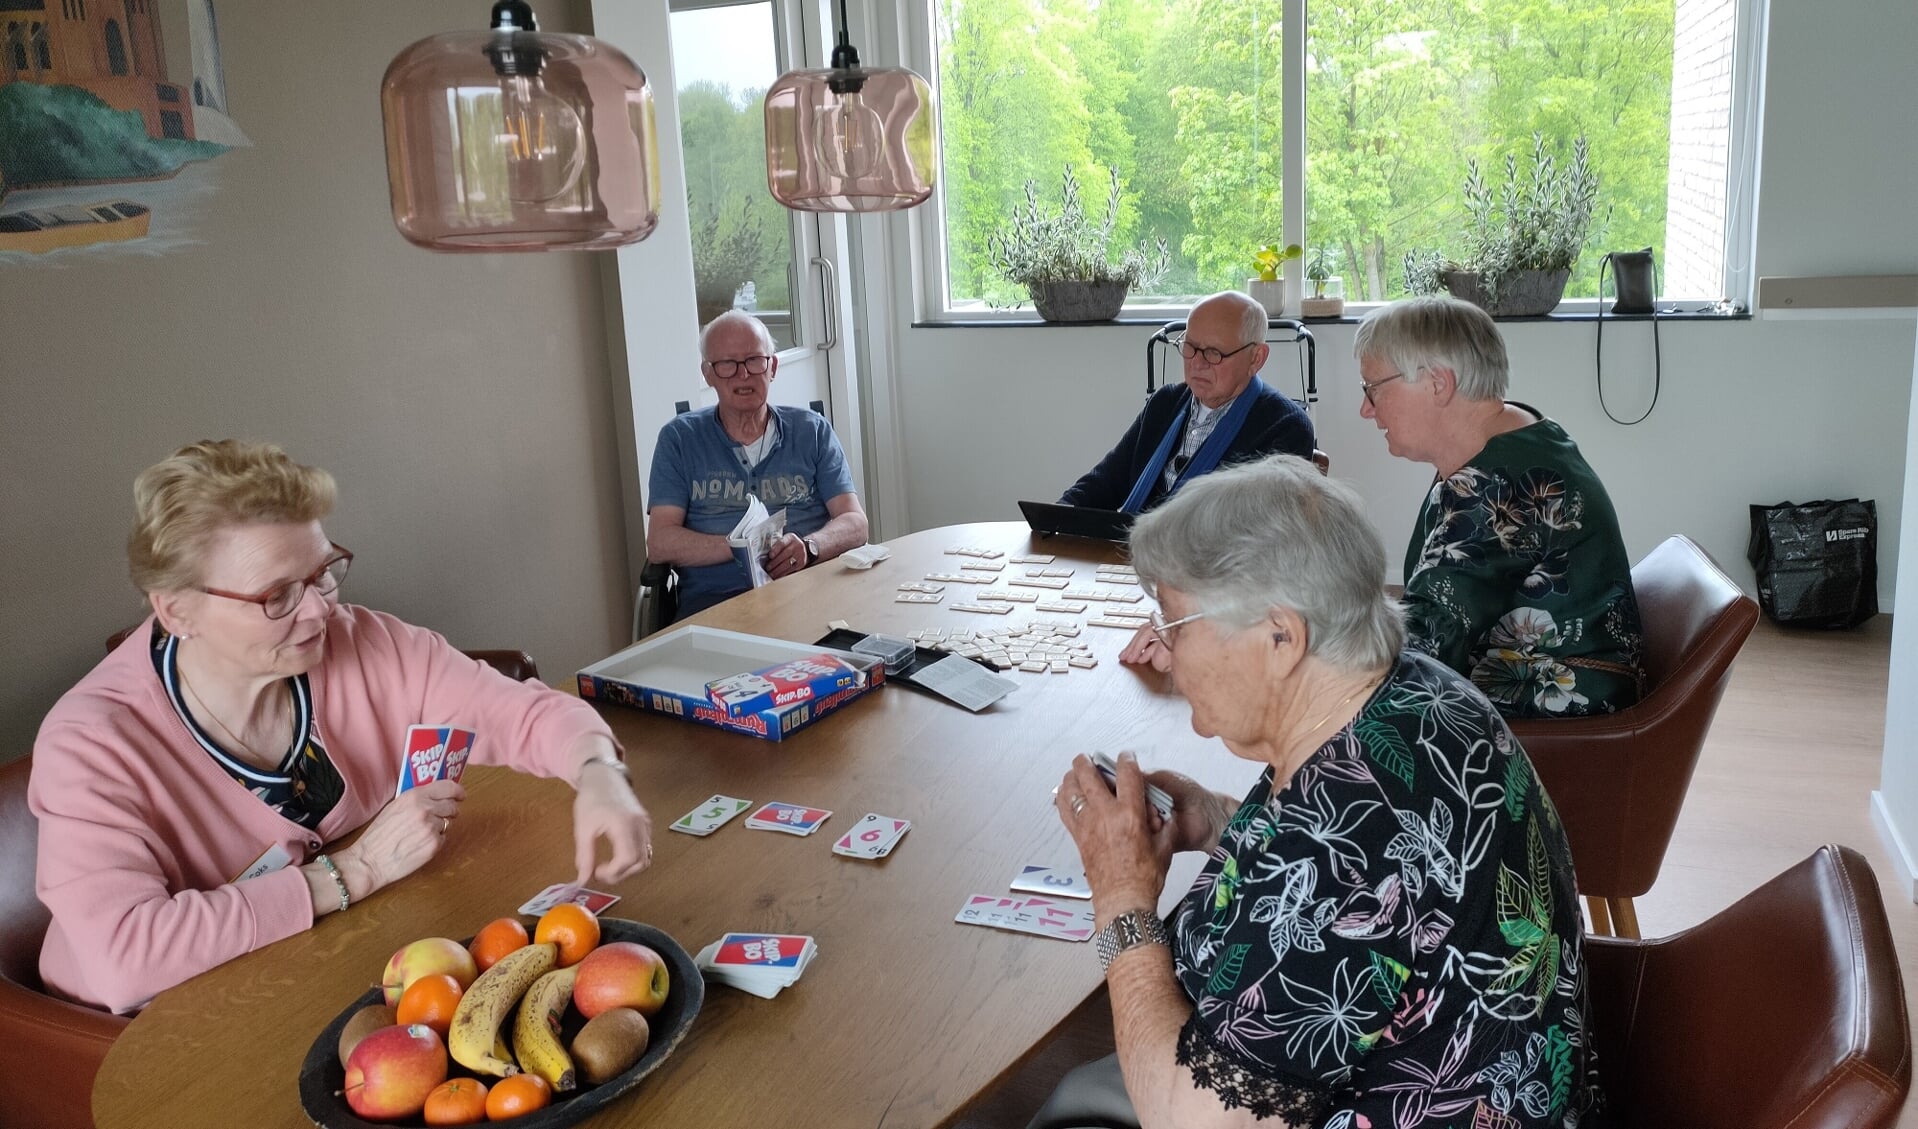 Gezellig spelletjes spelen met de logés op een regenachtige lentemiddag in Logeerhuis Bredius